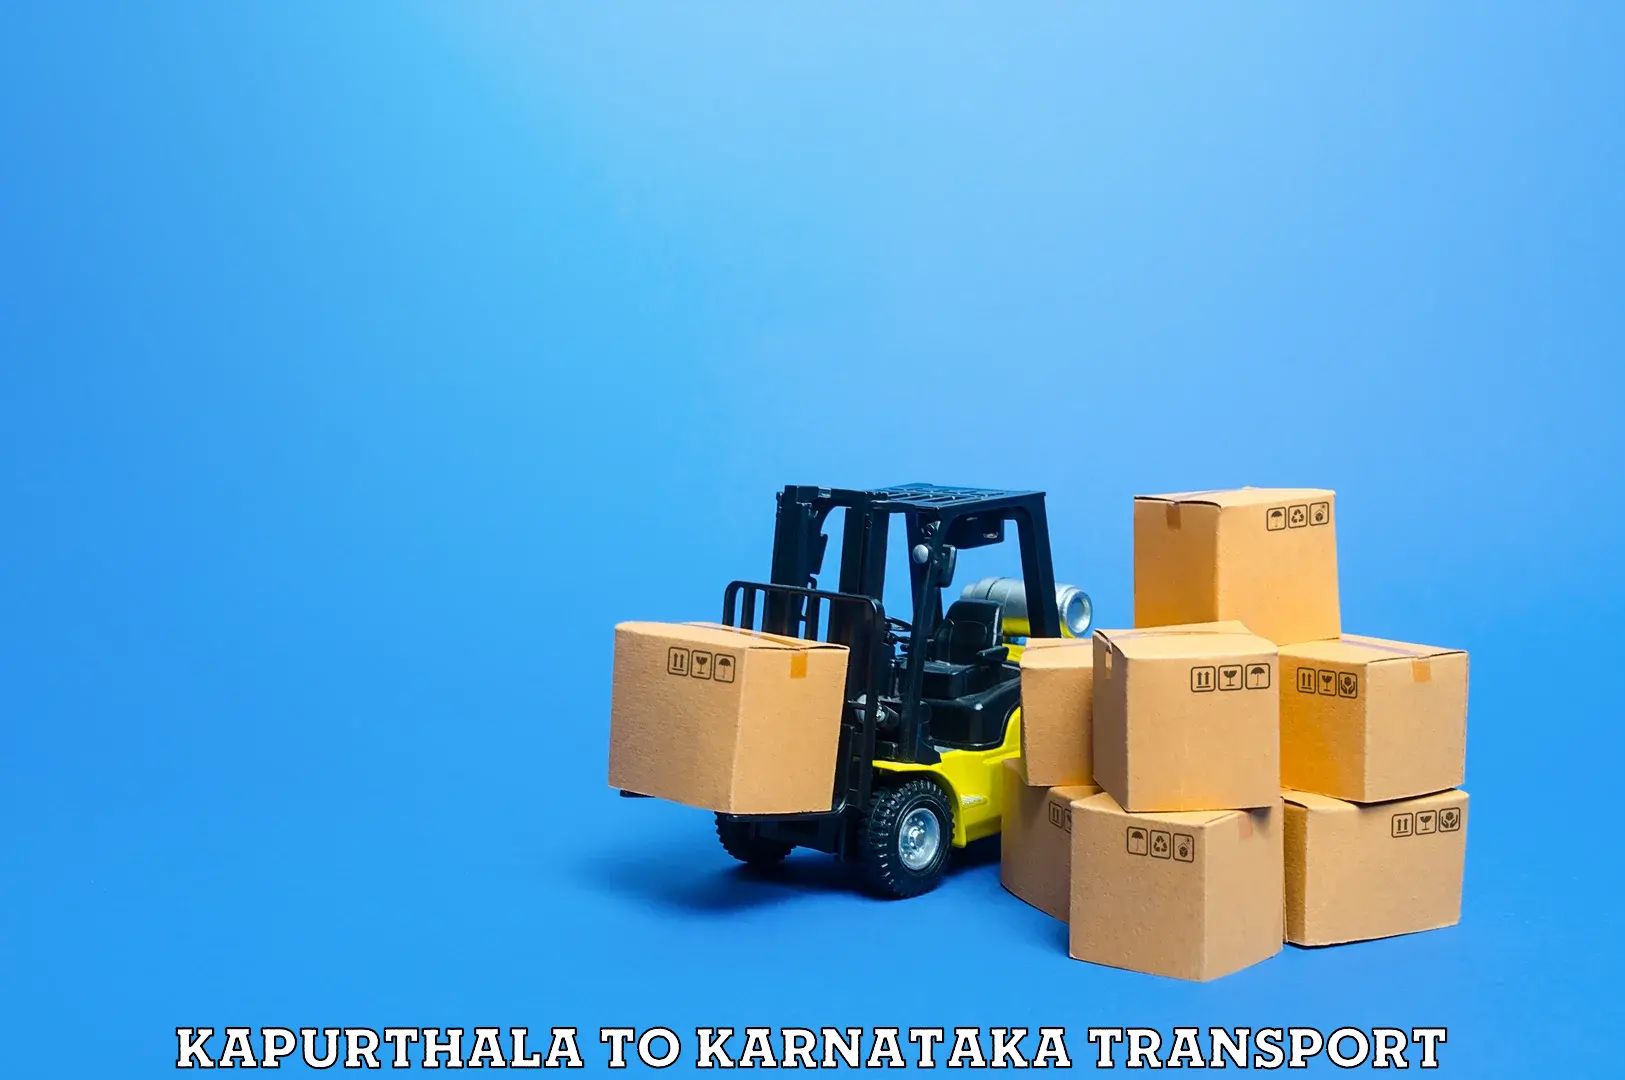 Cargo train transport services Kapurthala to Kalaburagi